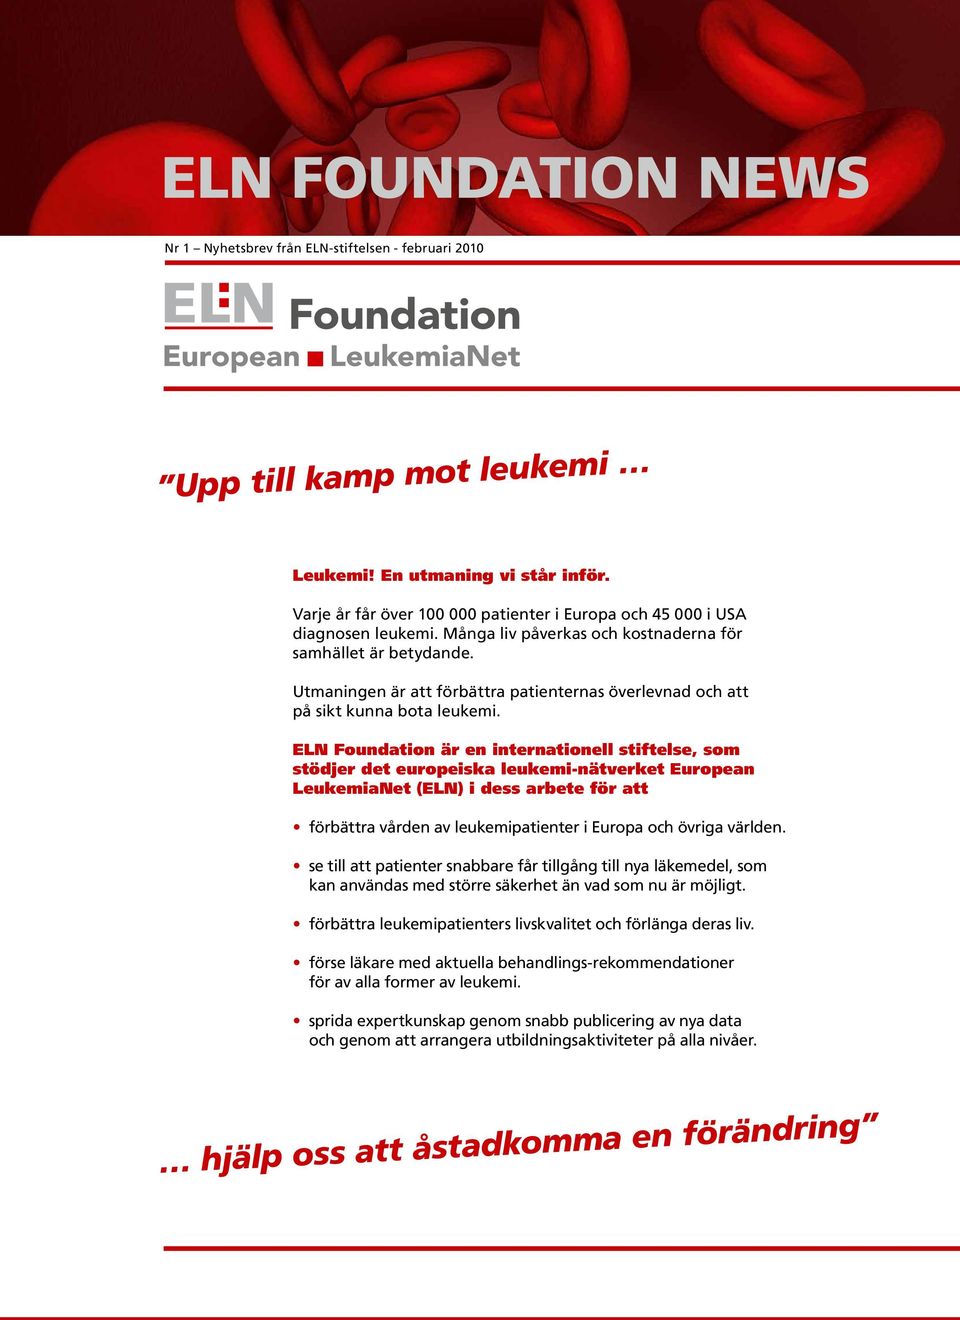 ELN Foundation är en internationell stiftelse, som stödjer det europeiska leukemi-nätverket European LeukemiaNet (ELN) i dess arbete för att förbättra vården av leukemipatienter i Europa och övriga